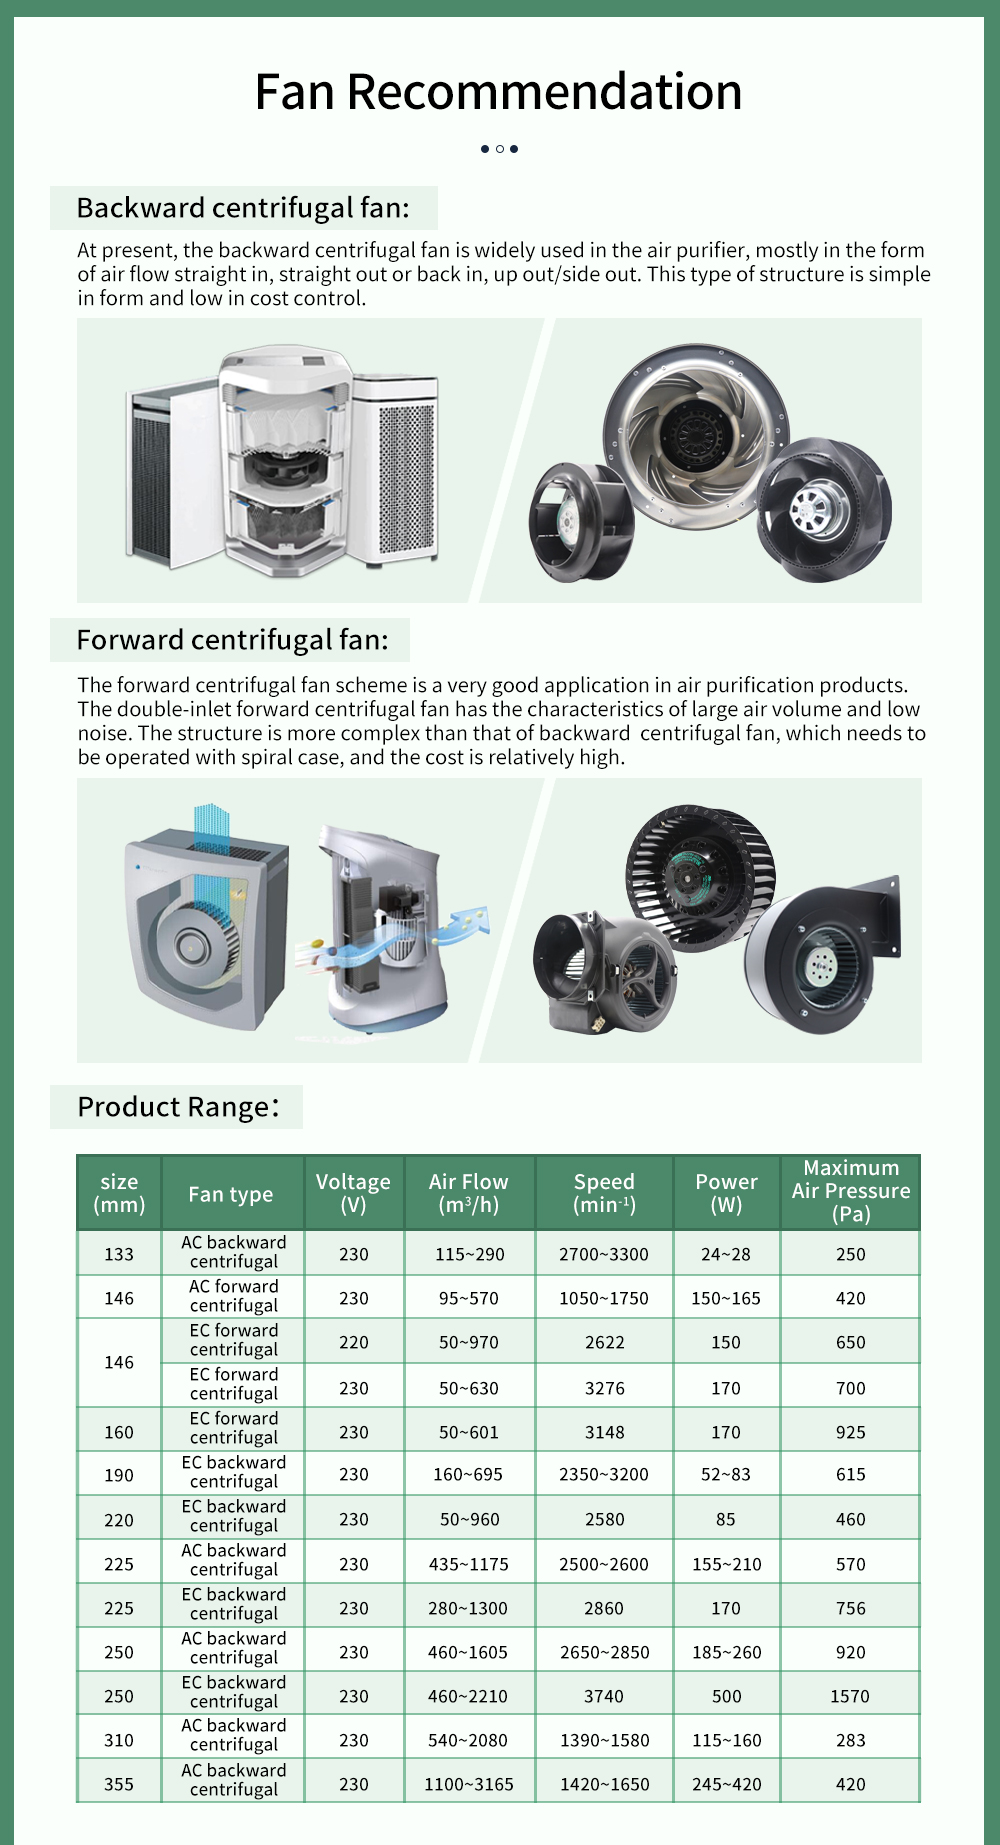 Backward centrifugal fan